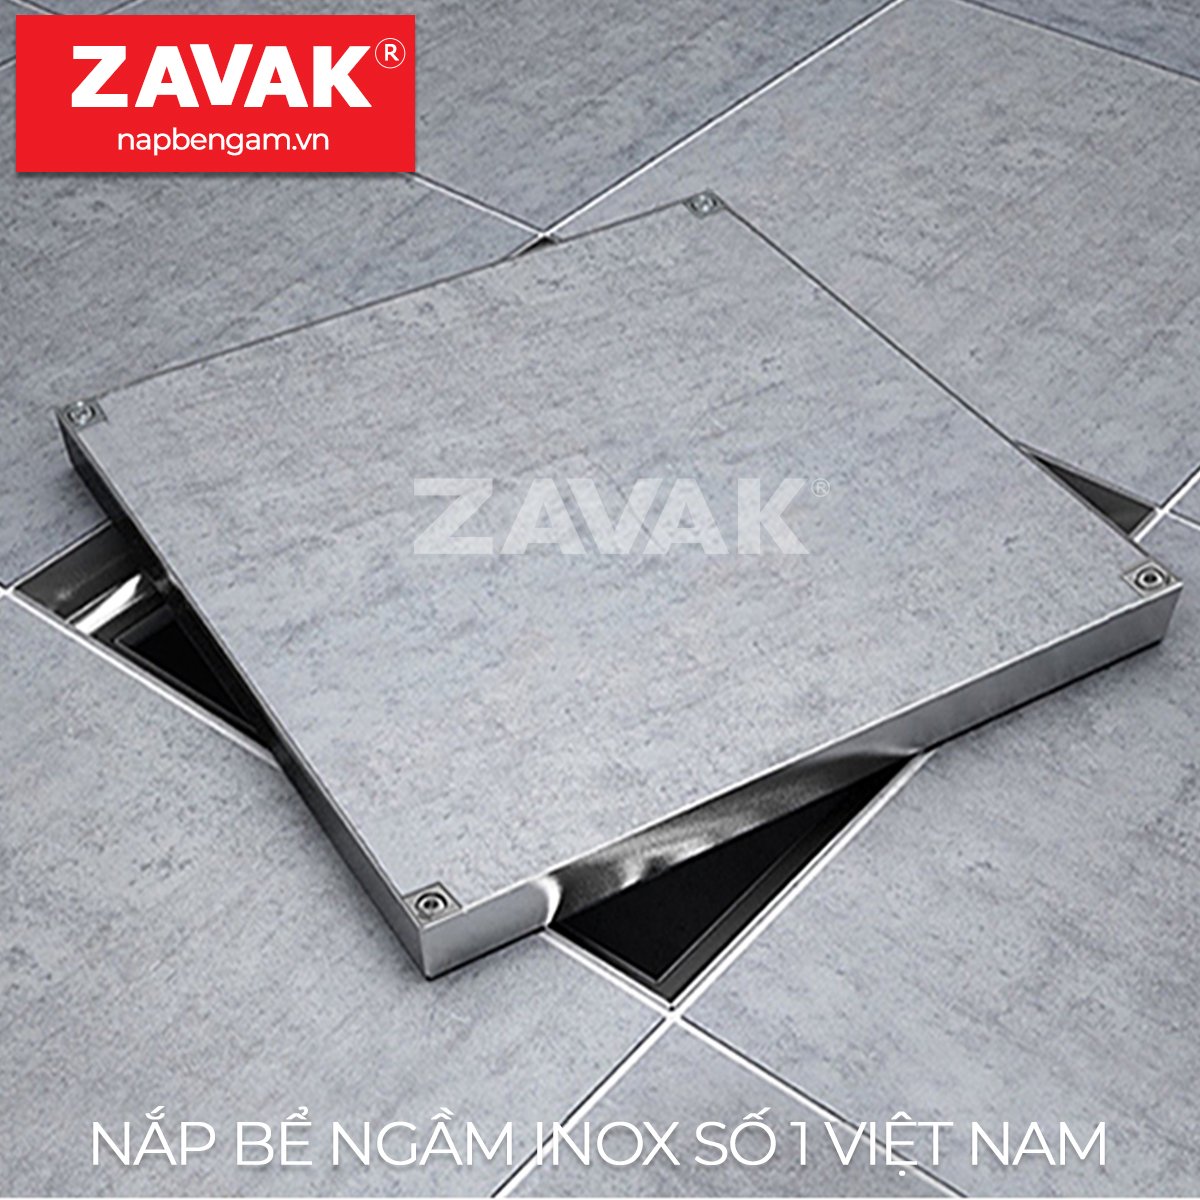 Hình ảnh Nắp bể ngầm Zavak Inox 304. MHO 600x600